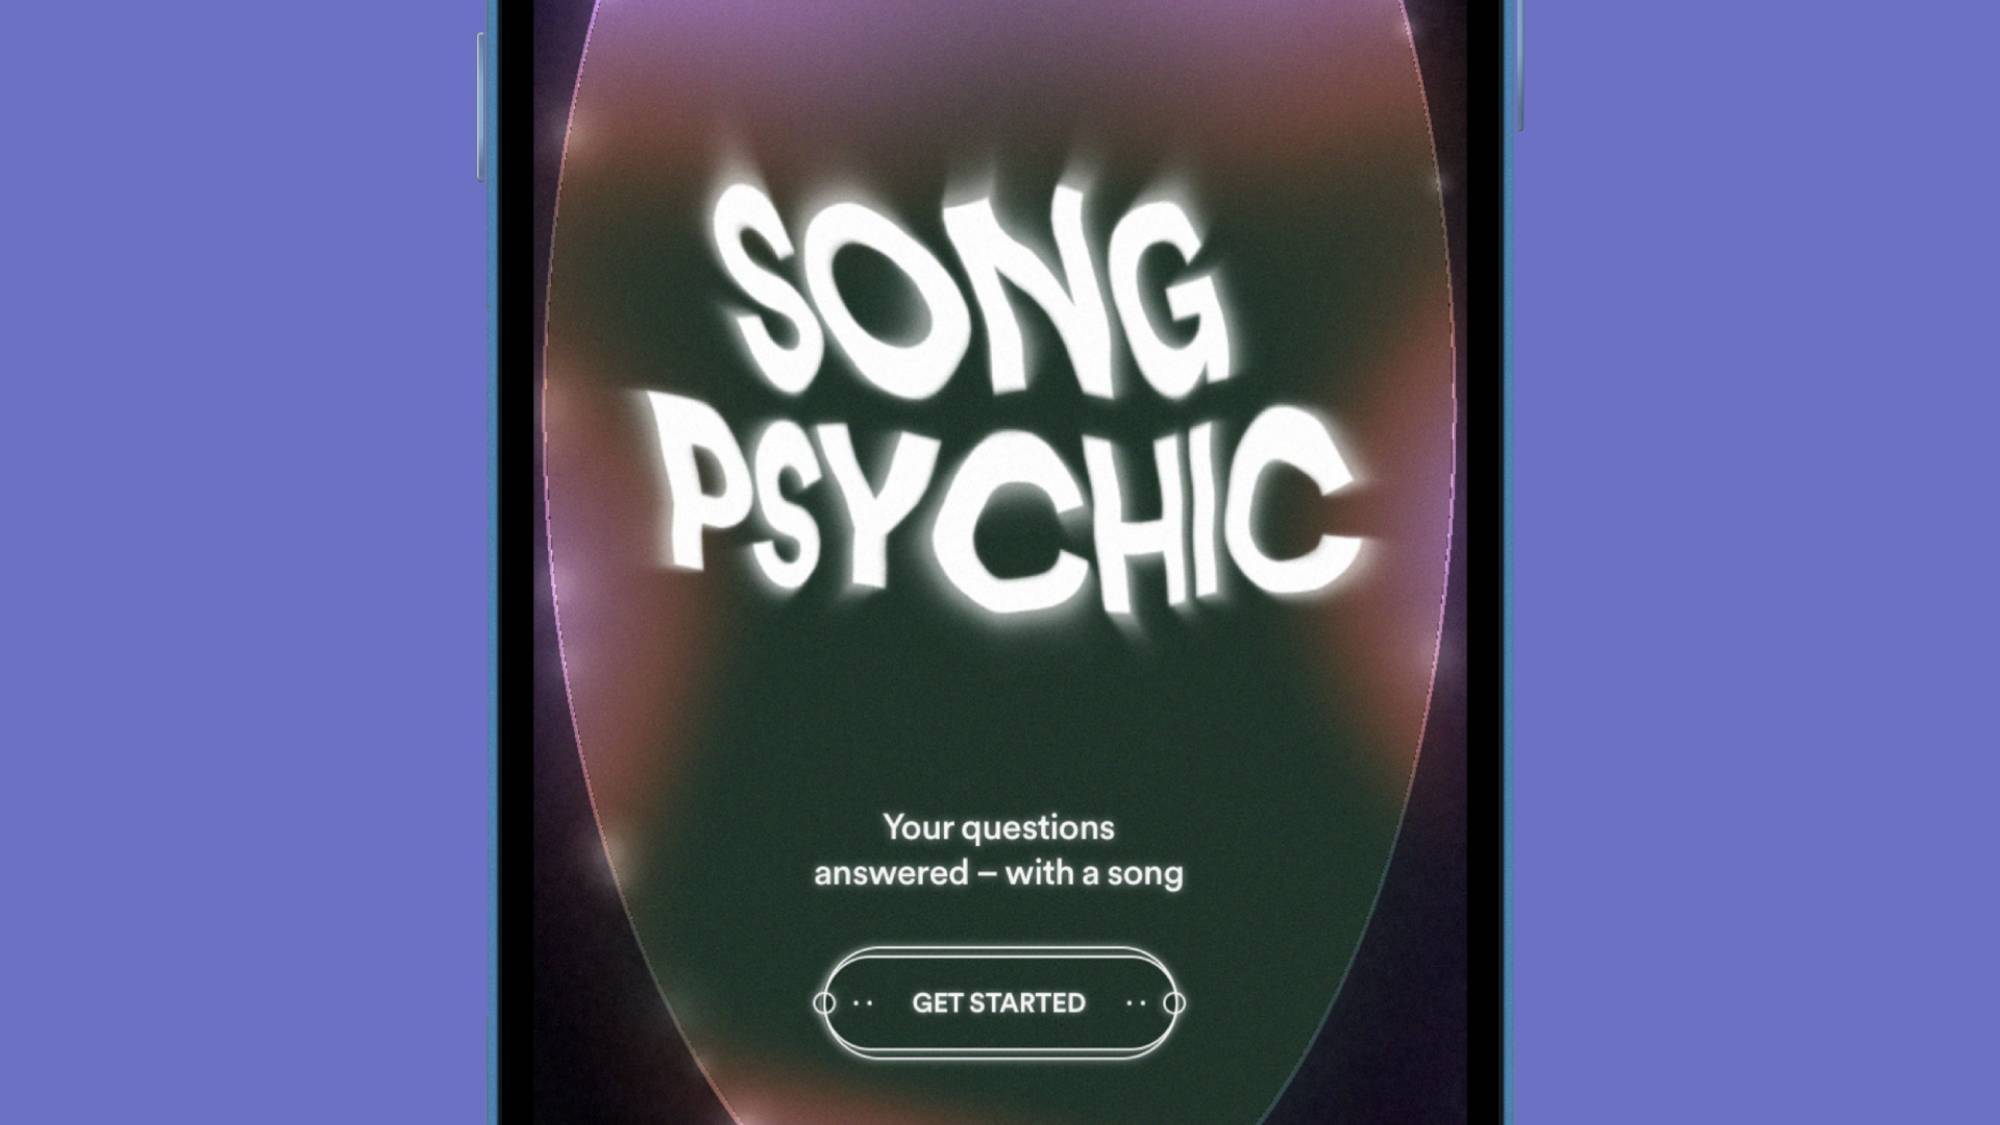  Название и страница приветствия Spotify Song Psychic